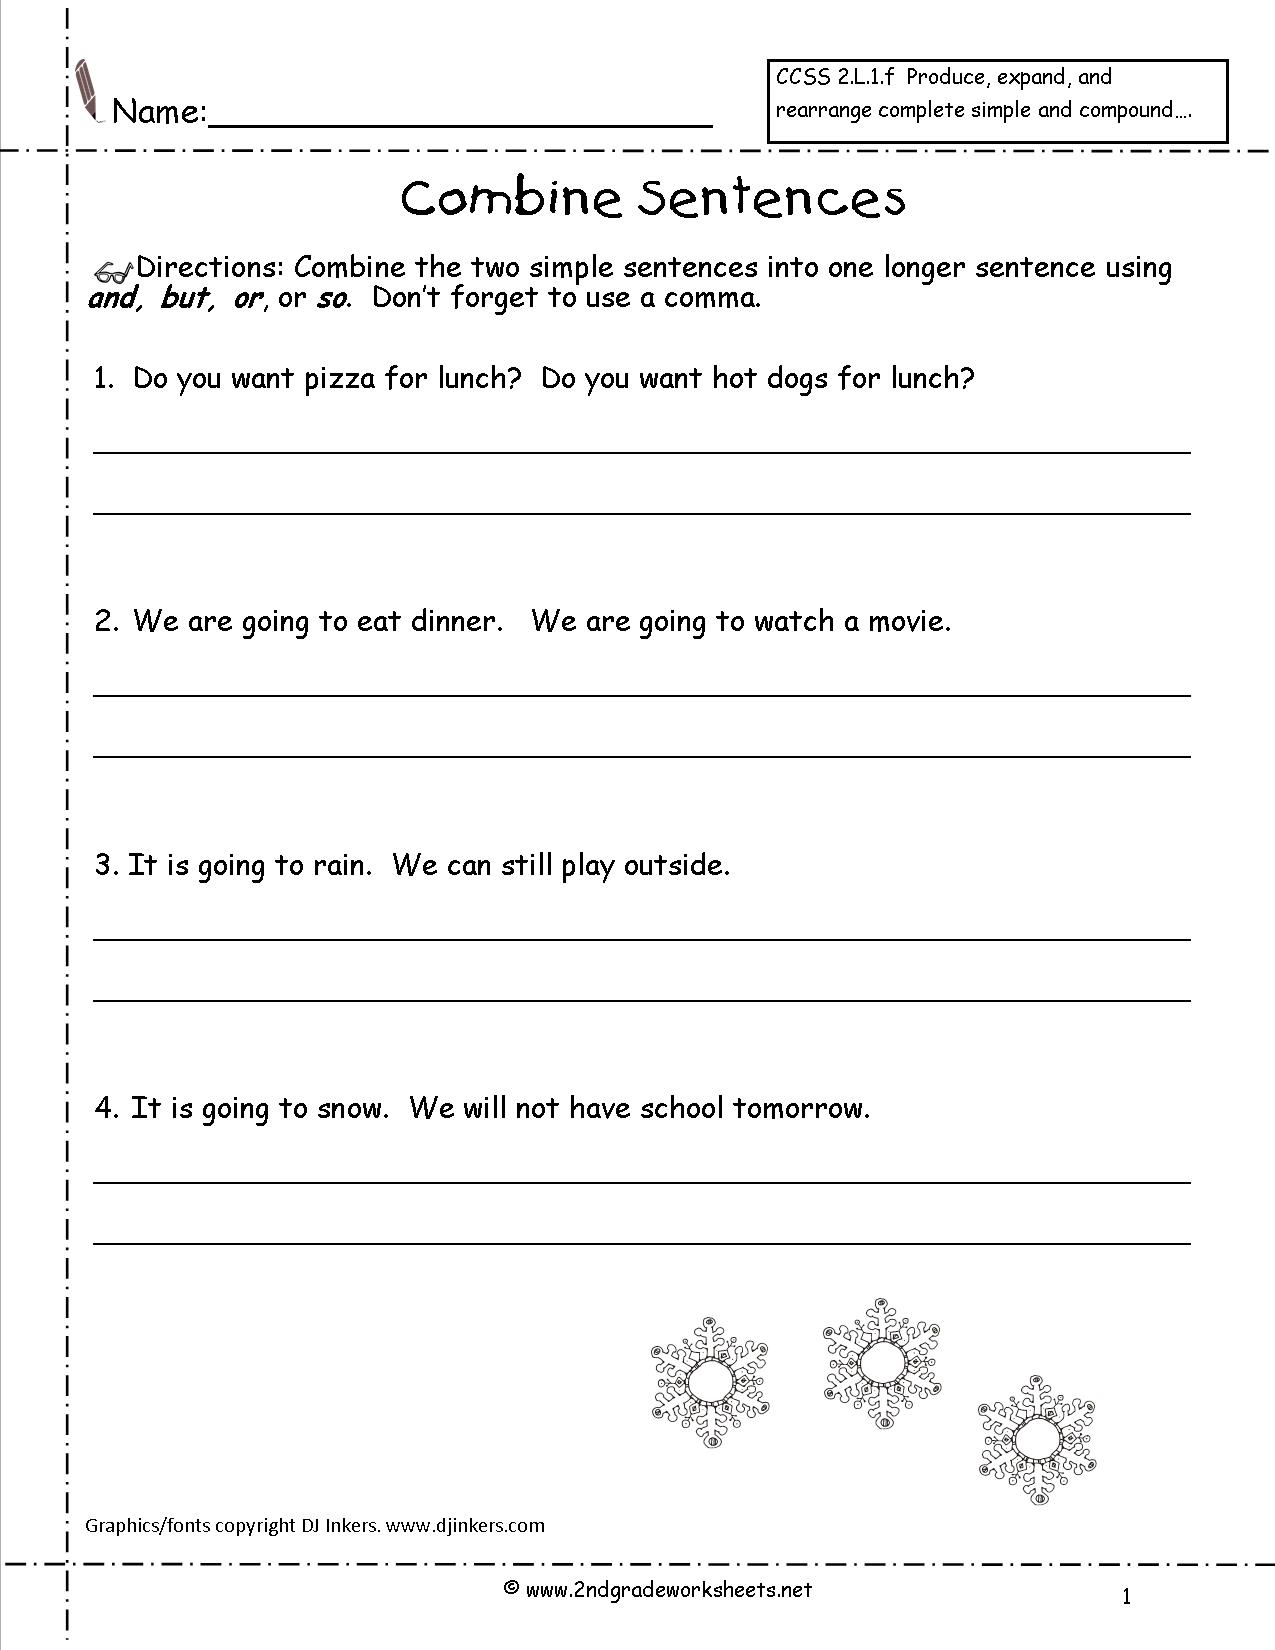 Complete Sentences Worksheets 2nd Grade